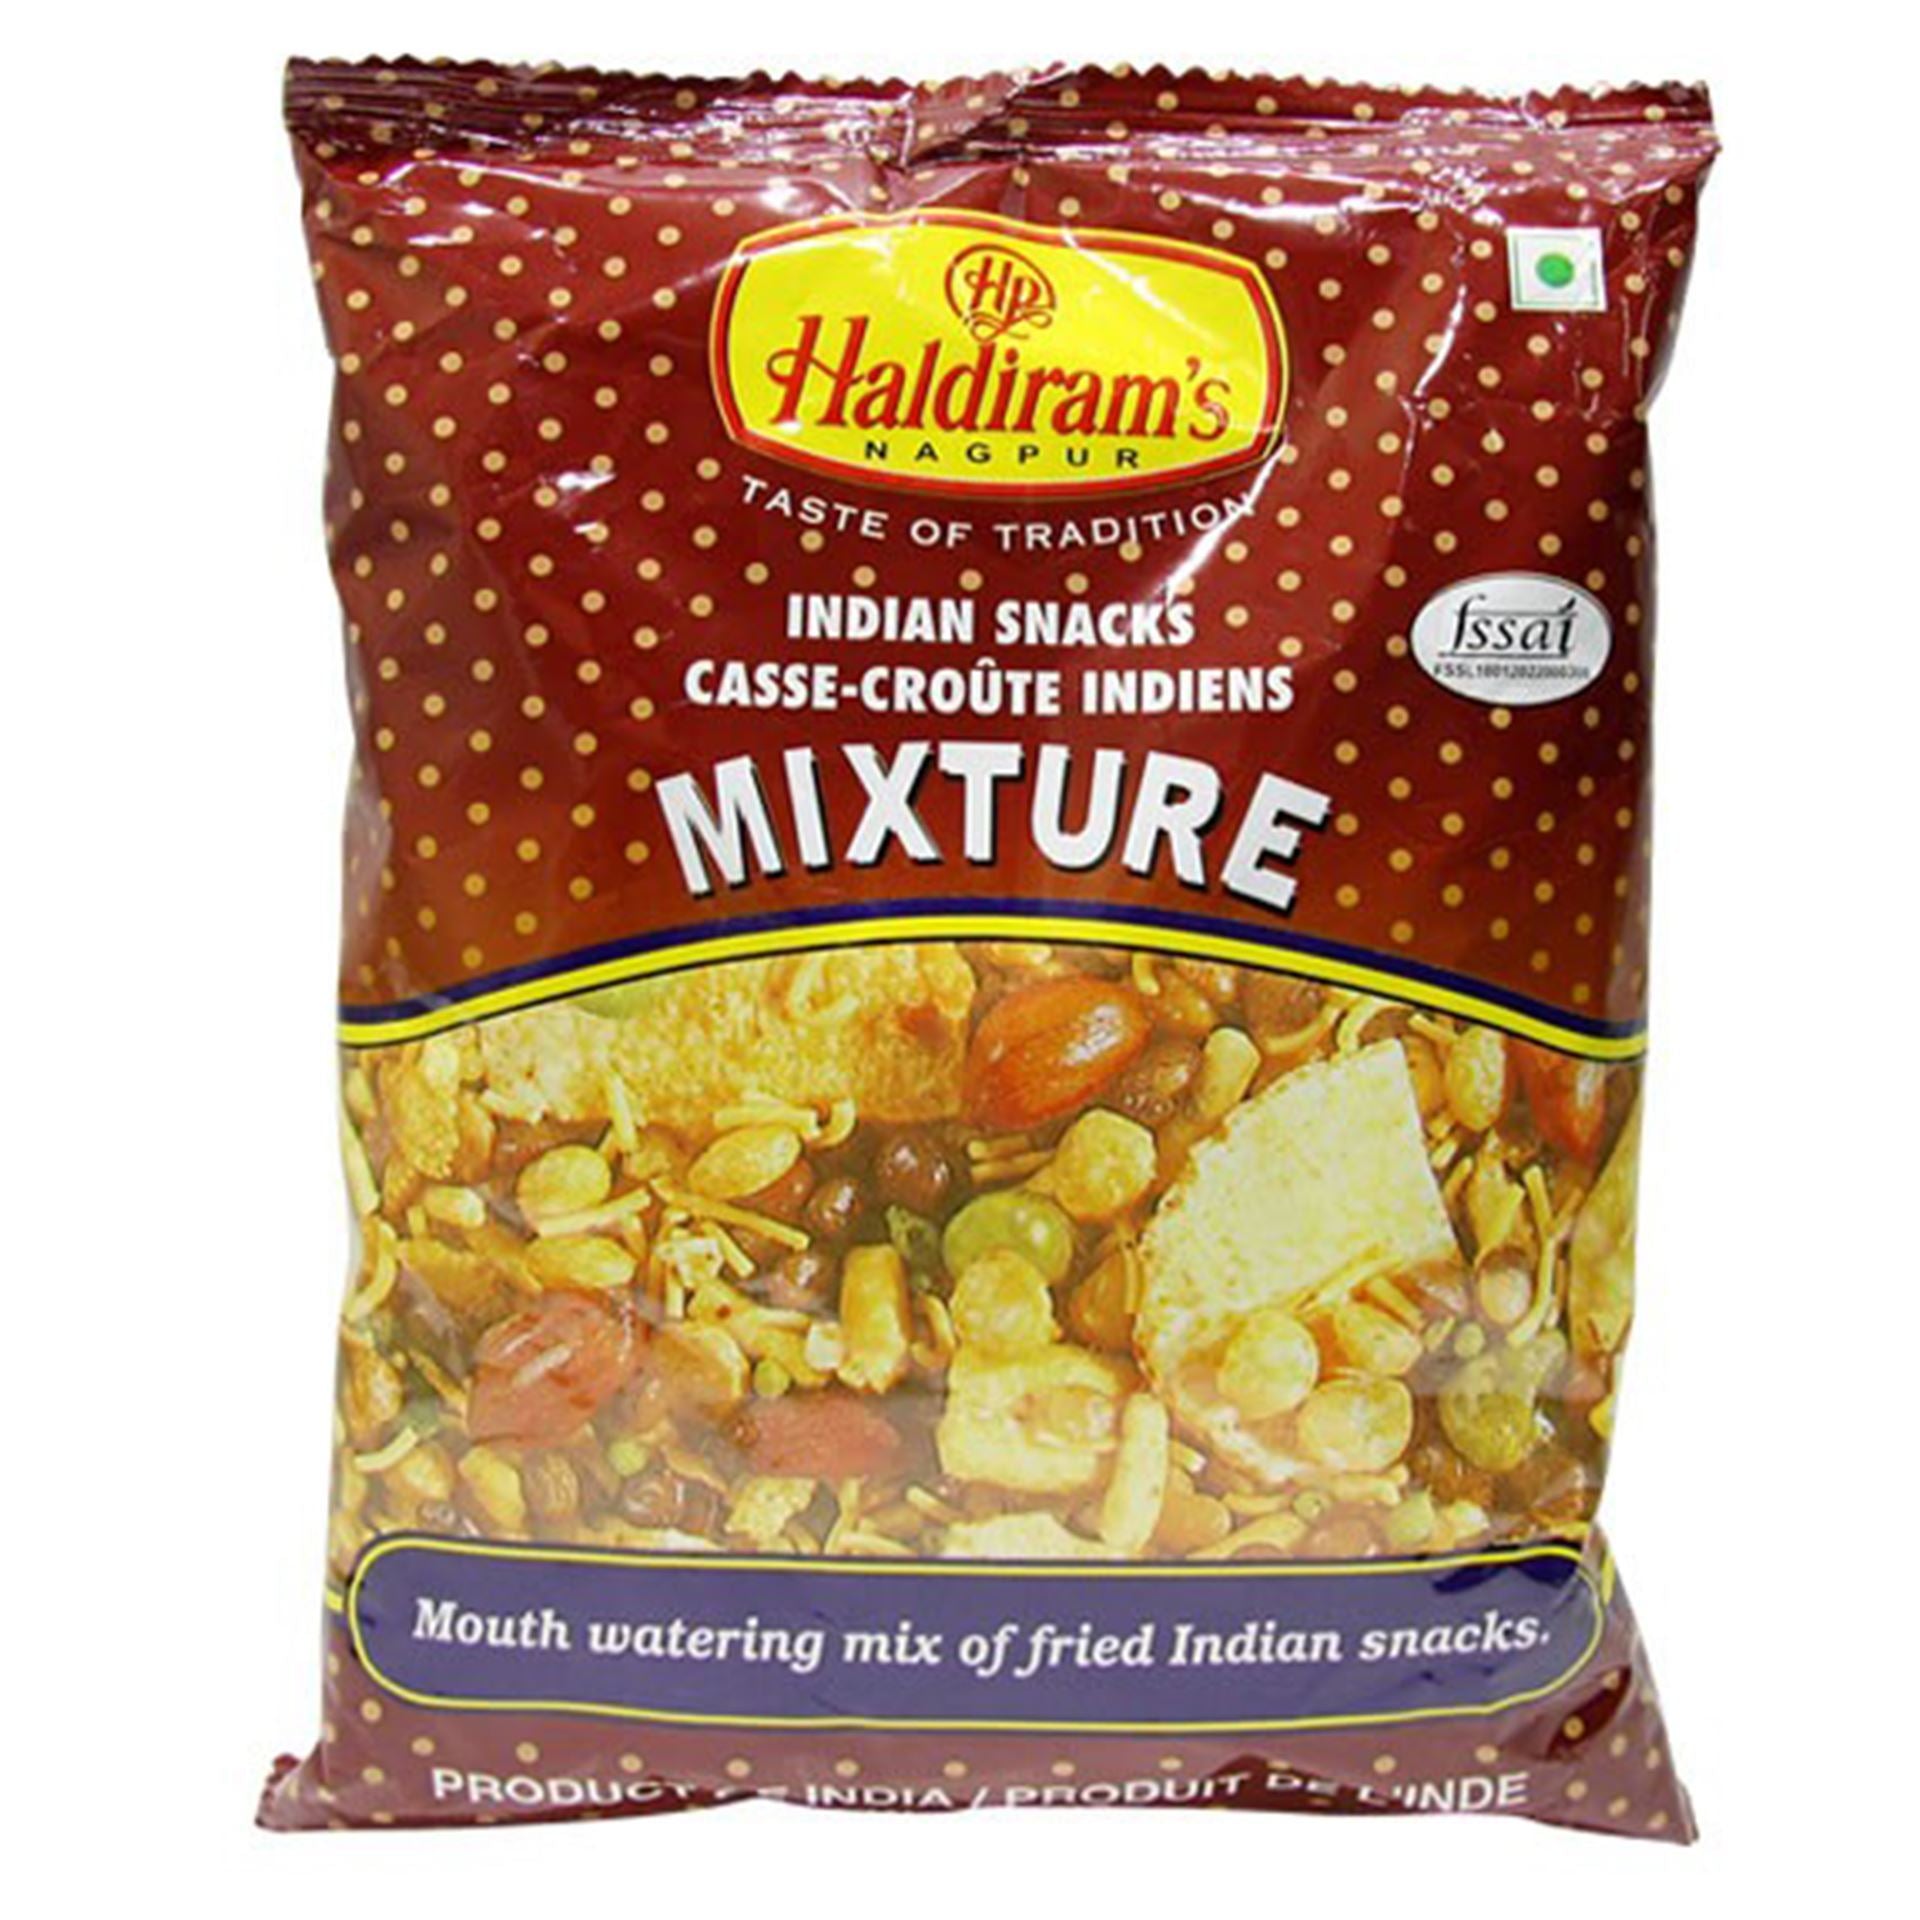 Haldiram's Mixture